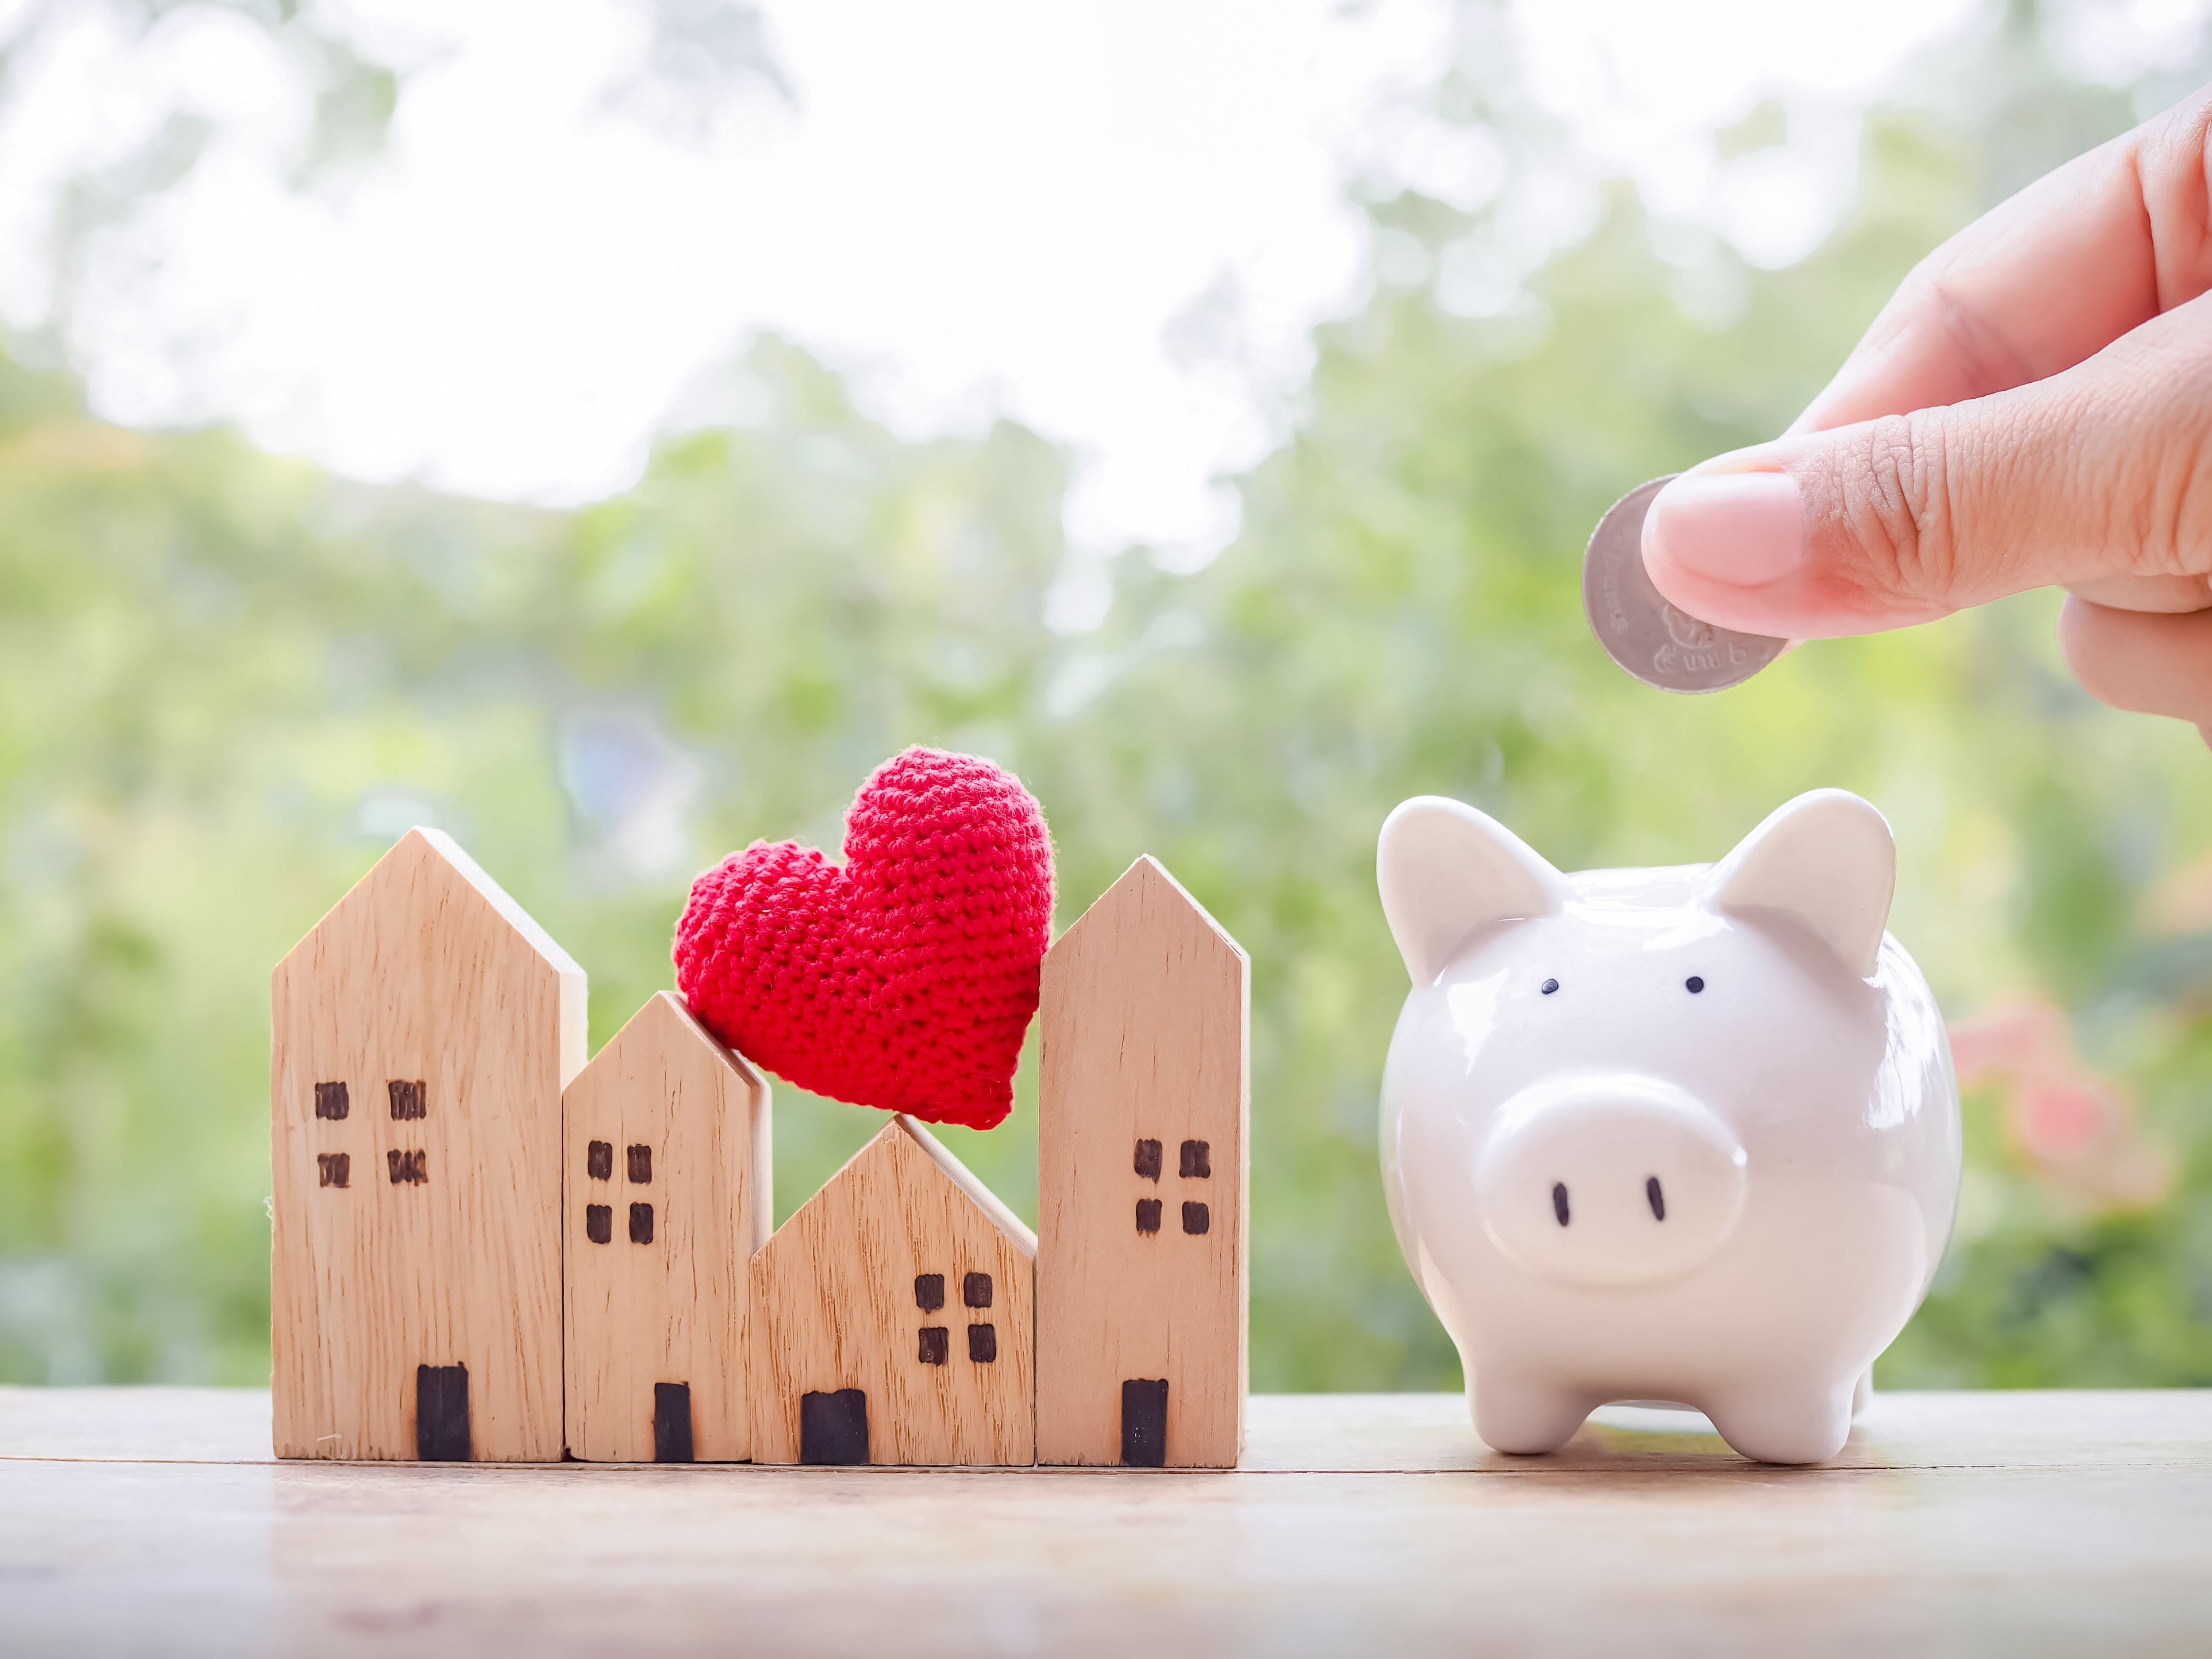 Cierre la mano poniendo monedas en una alcancía y una casa en miniatura, el concepto de ahorro para la casa y la propiedad.